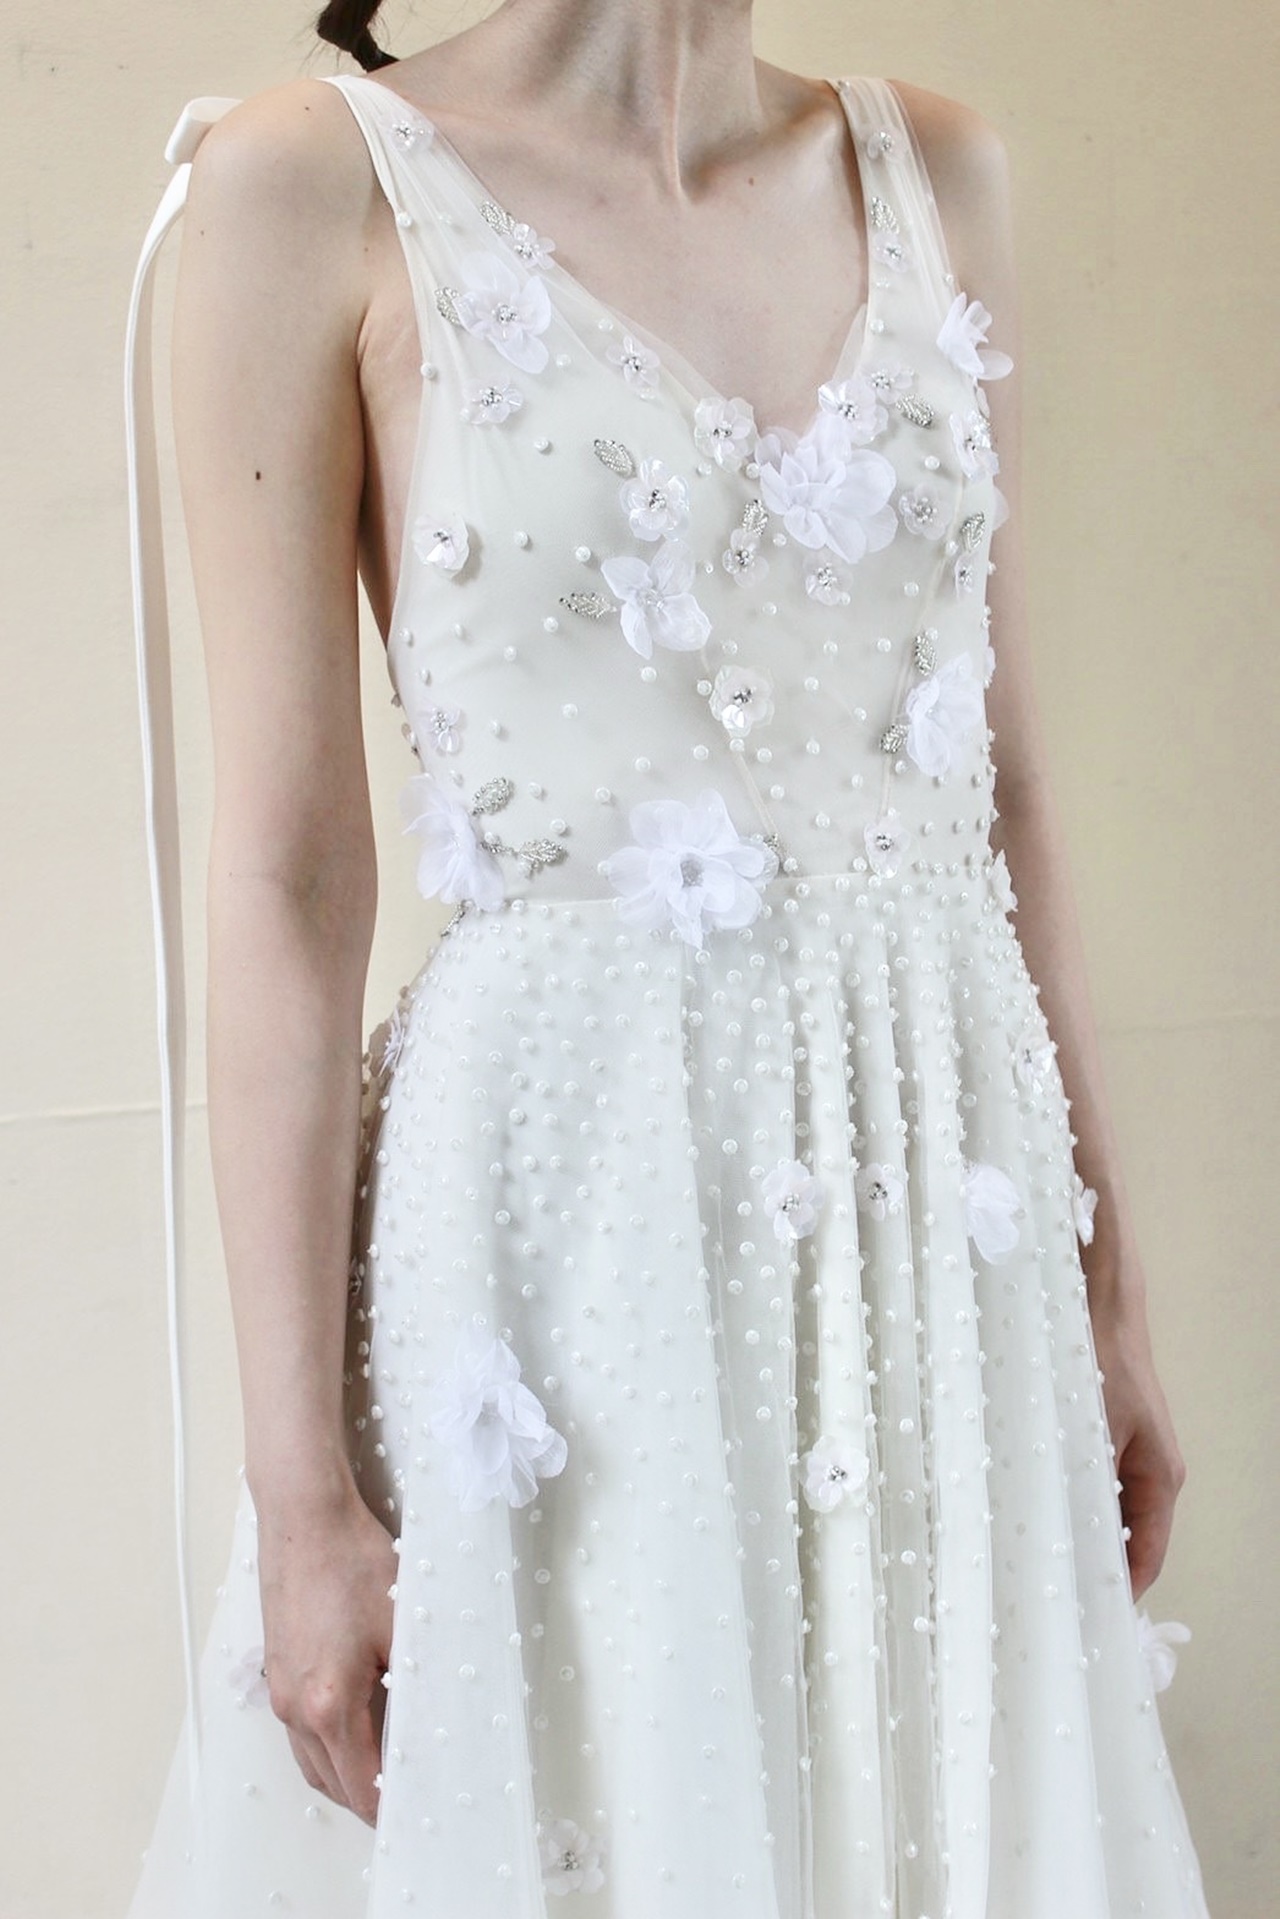 トリートドレッシング 福岡店にてレンタルいただける、新作のリズ マルチネスのウェディングドレスは、お花のモチーフやキラキラとしたビーディングがとても華やかで可愛い一着